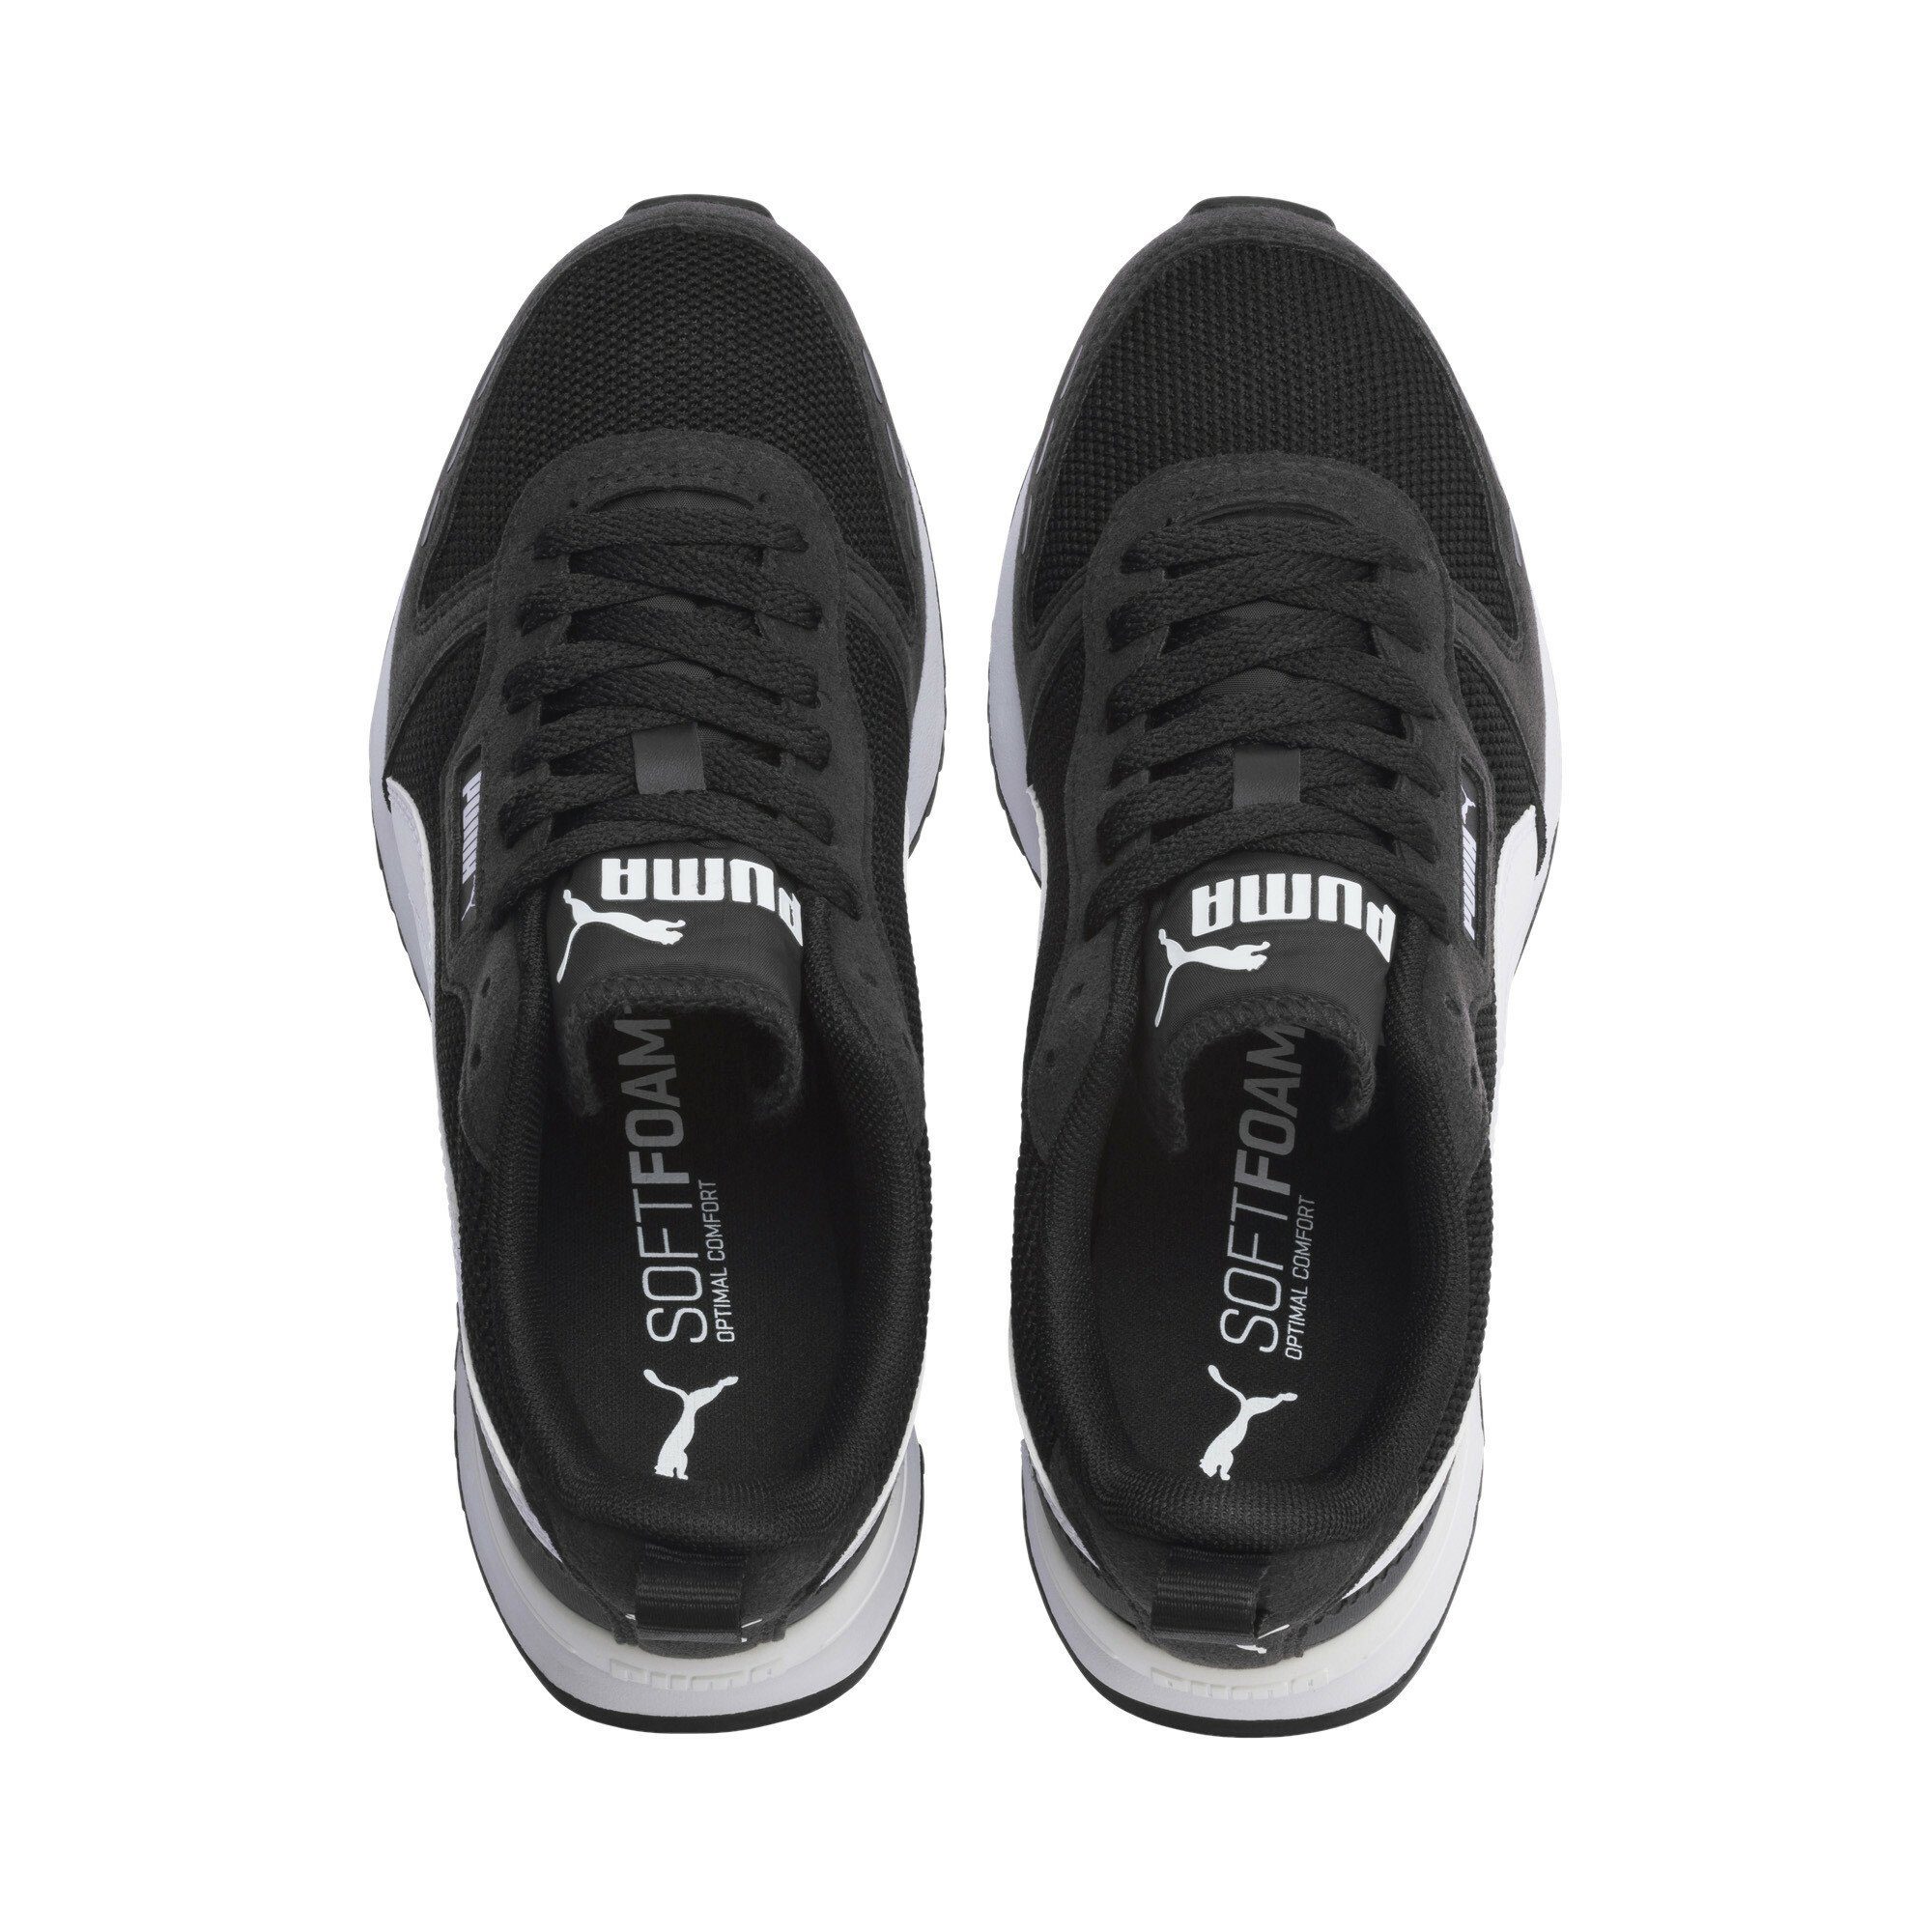 PUMA R78 Sneakers Jugendliche Laufschuh Black White